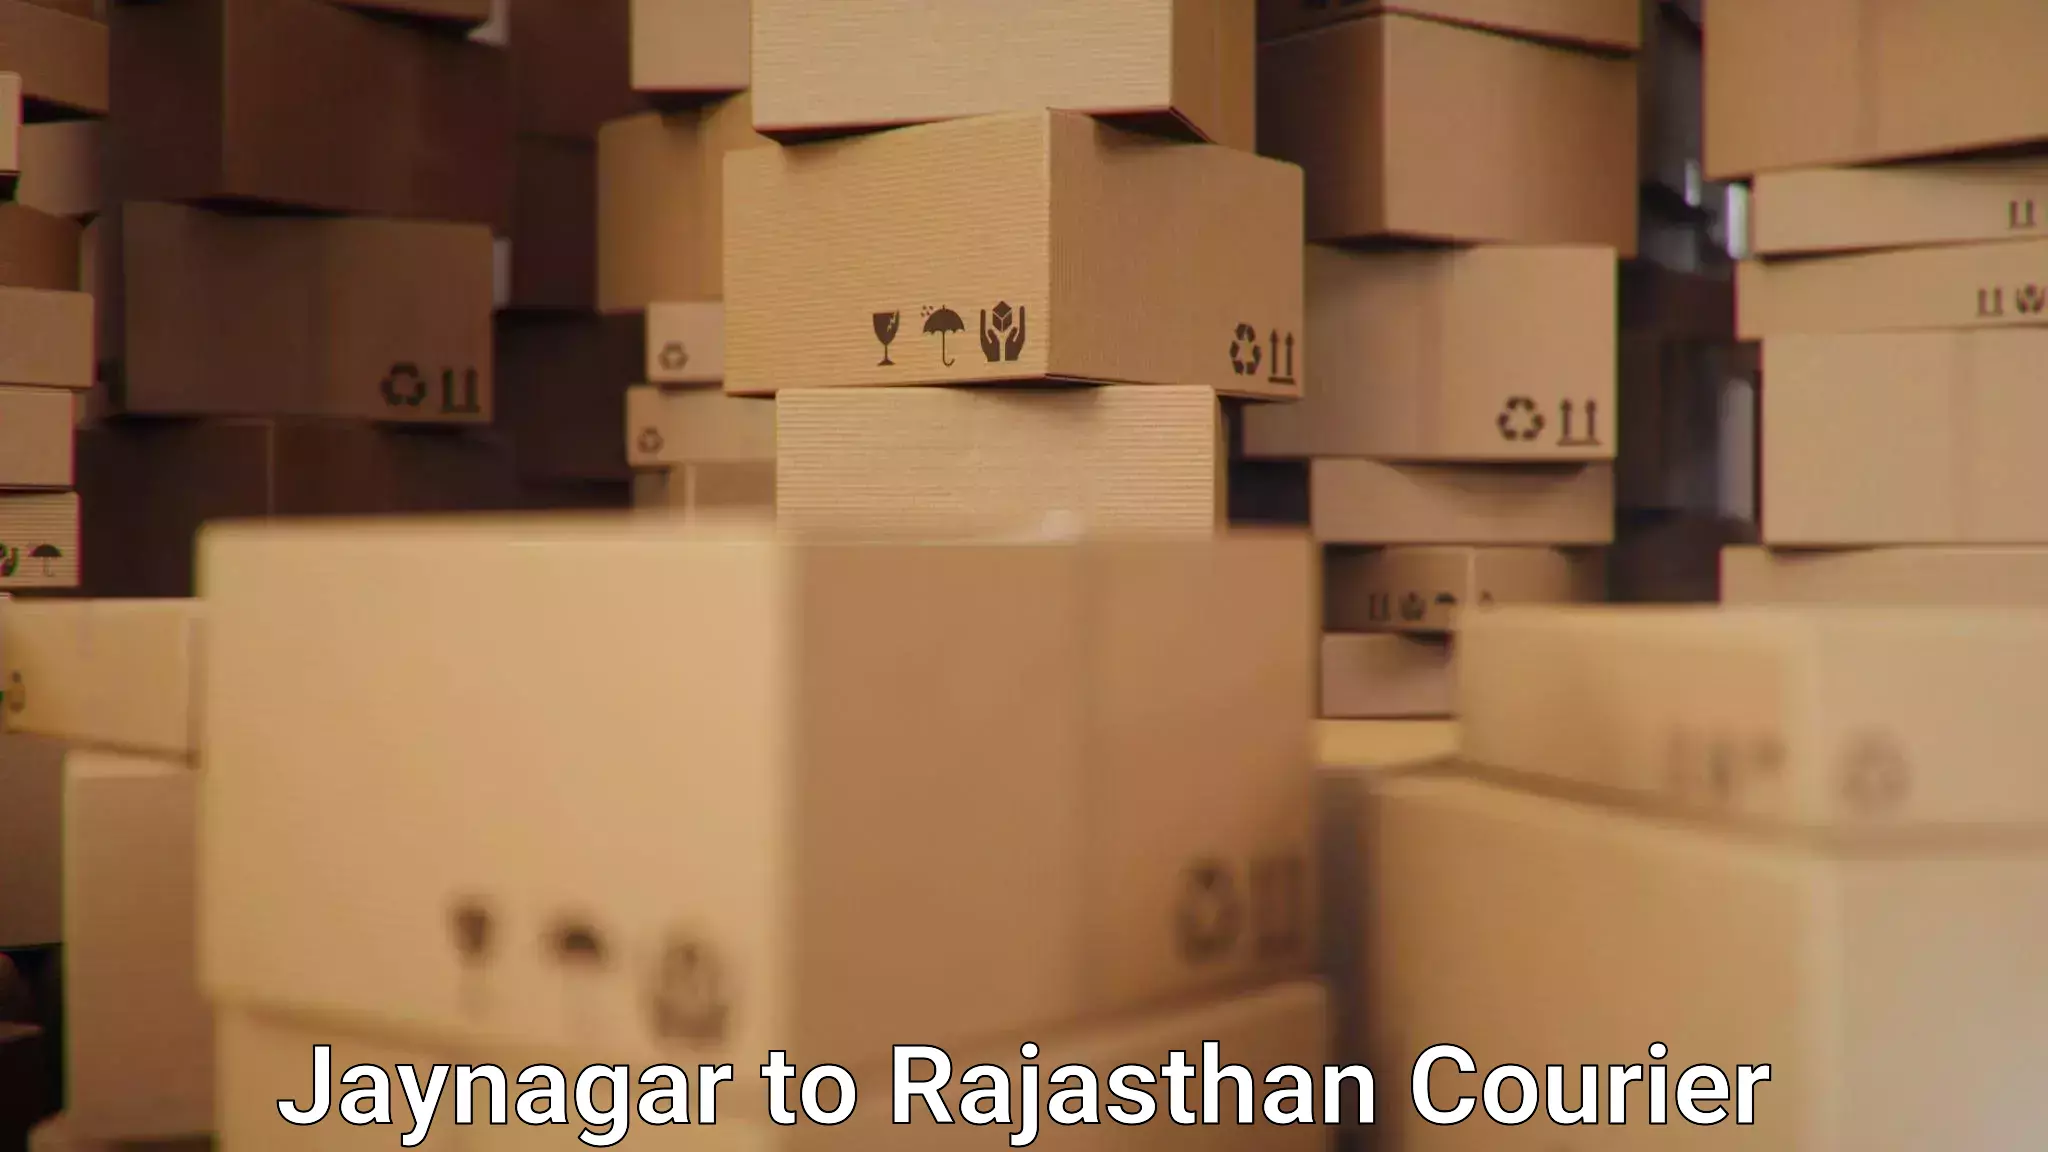 Express postal services Jaynagar to Rajasthan